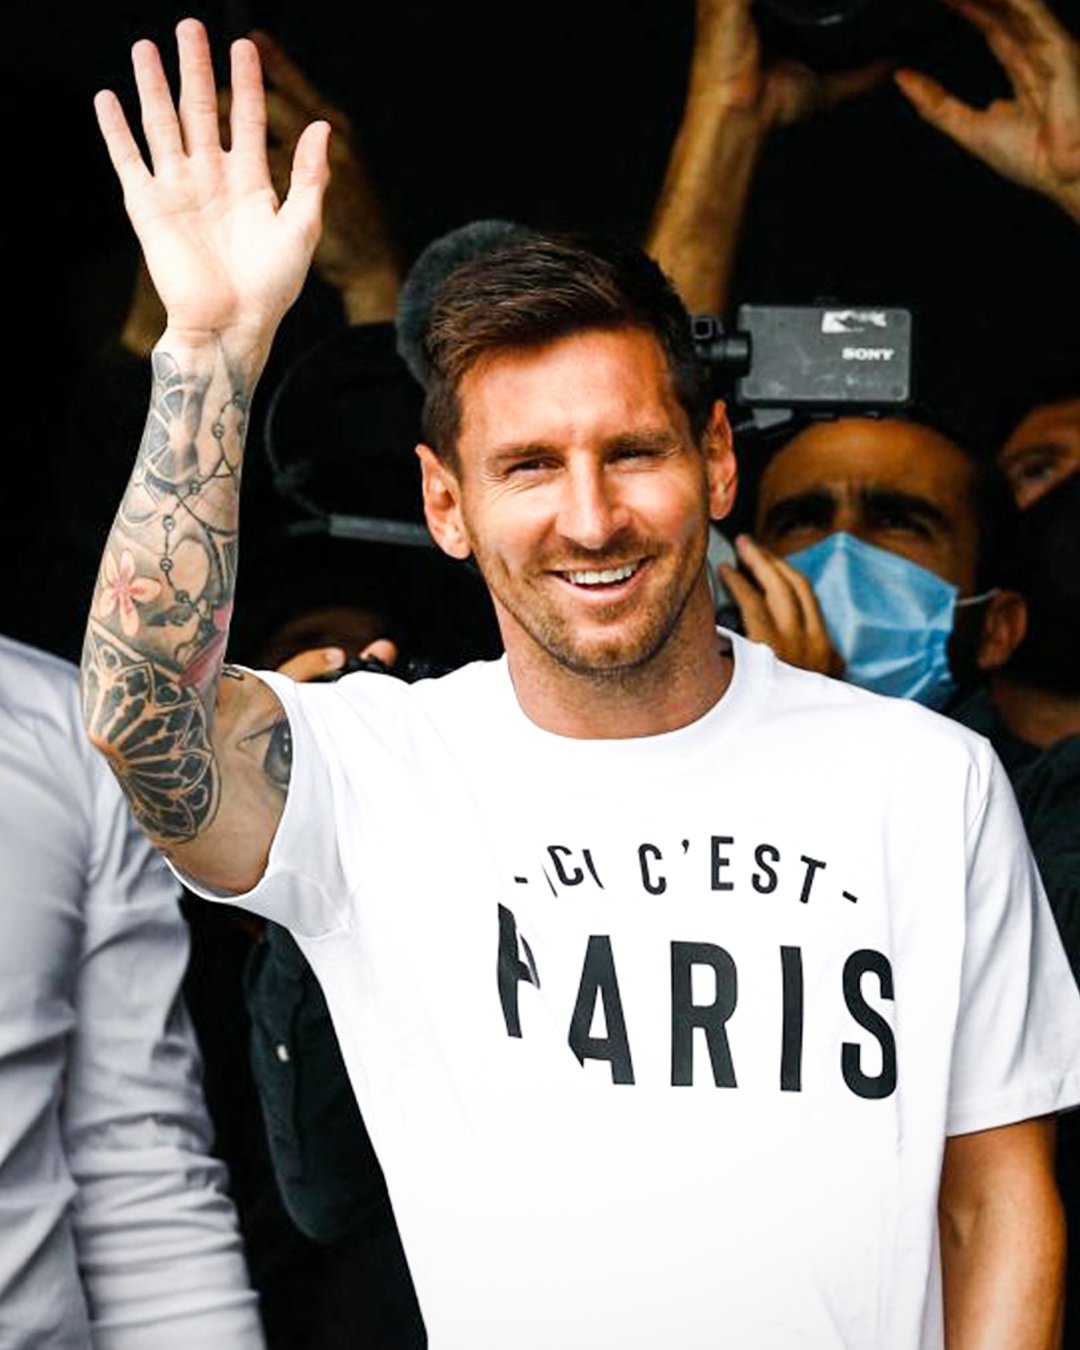 Mời bạn đến Paris cùng Messi với hình nền tuyệt đẹp của anh ấy, với đường nét mượt mà và sơ đồ màu sắc độc đáo. Hãy tận hưởng trải nghiệm tràn đầy giác quan và sự nổi bật của ngôi sao bóng đá hàng đầu thế giới.